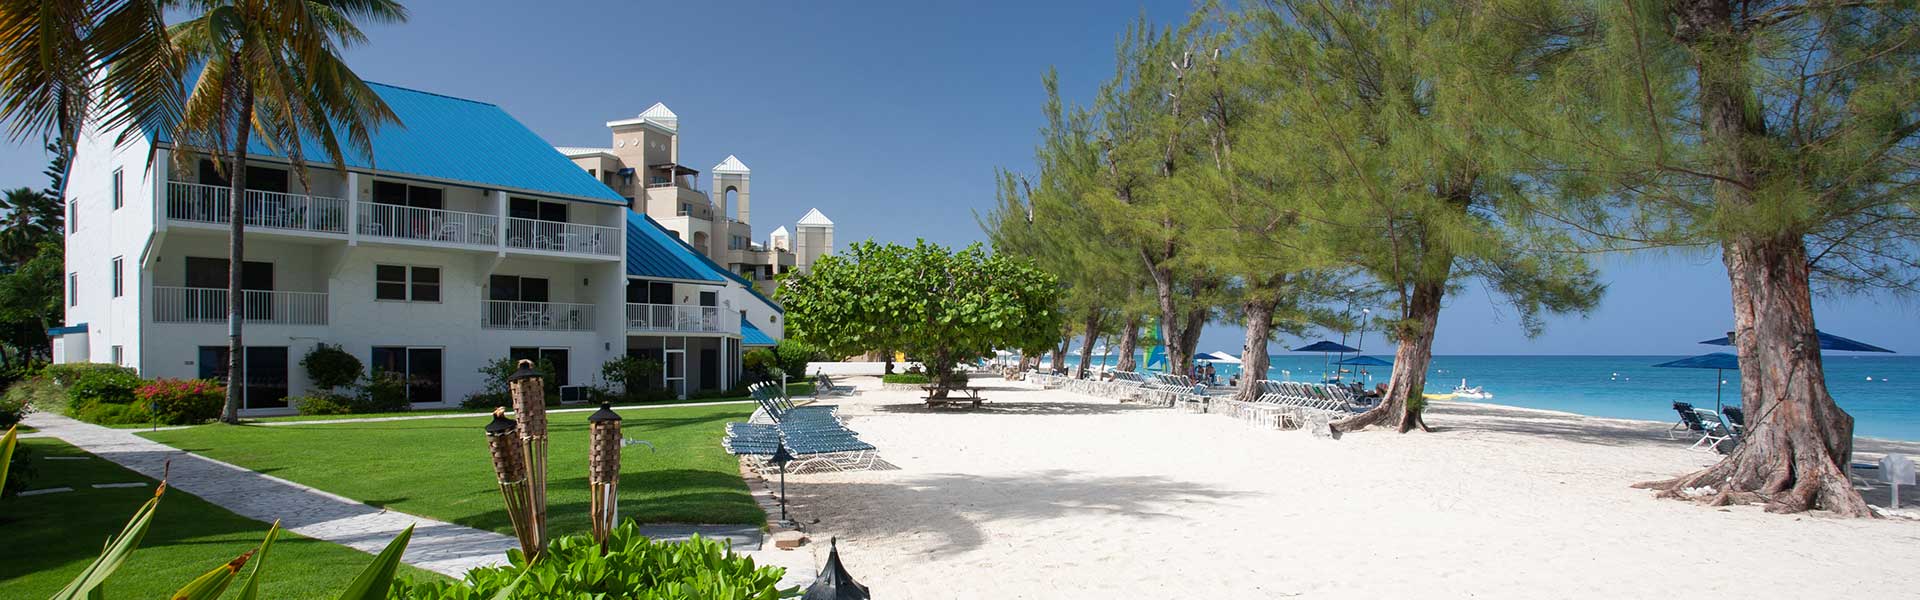 Villas of the Galleon, Seven Mile Beach, Grand Cayman